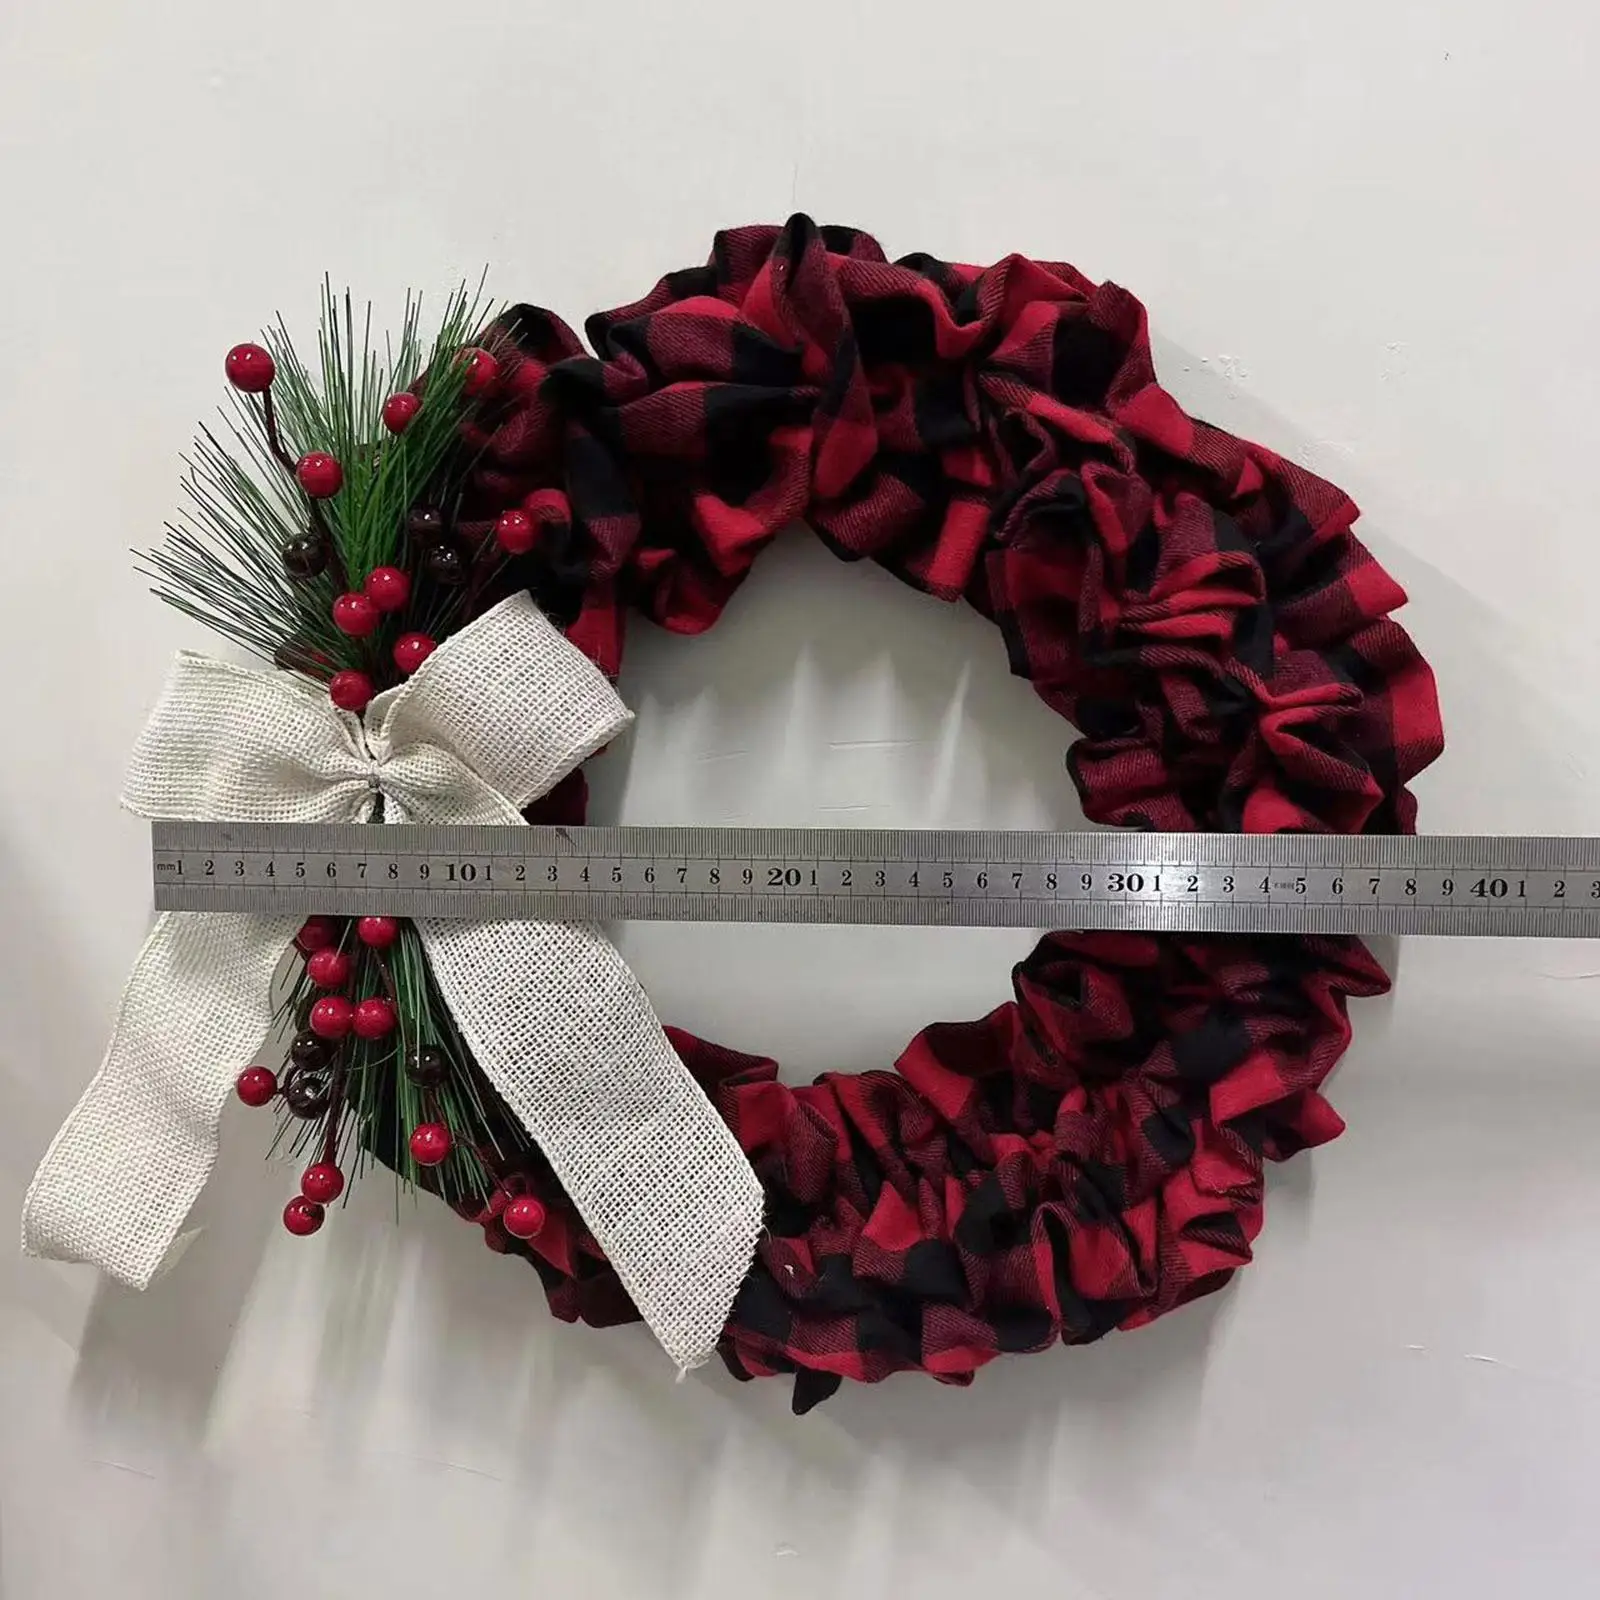 Christmas Round Wreath Artificial Wreath for Garden Farmhouse Party Supplies